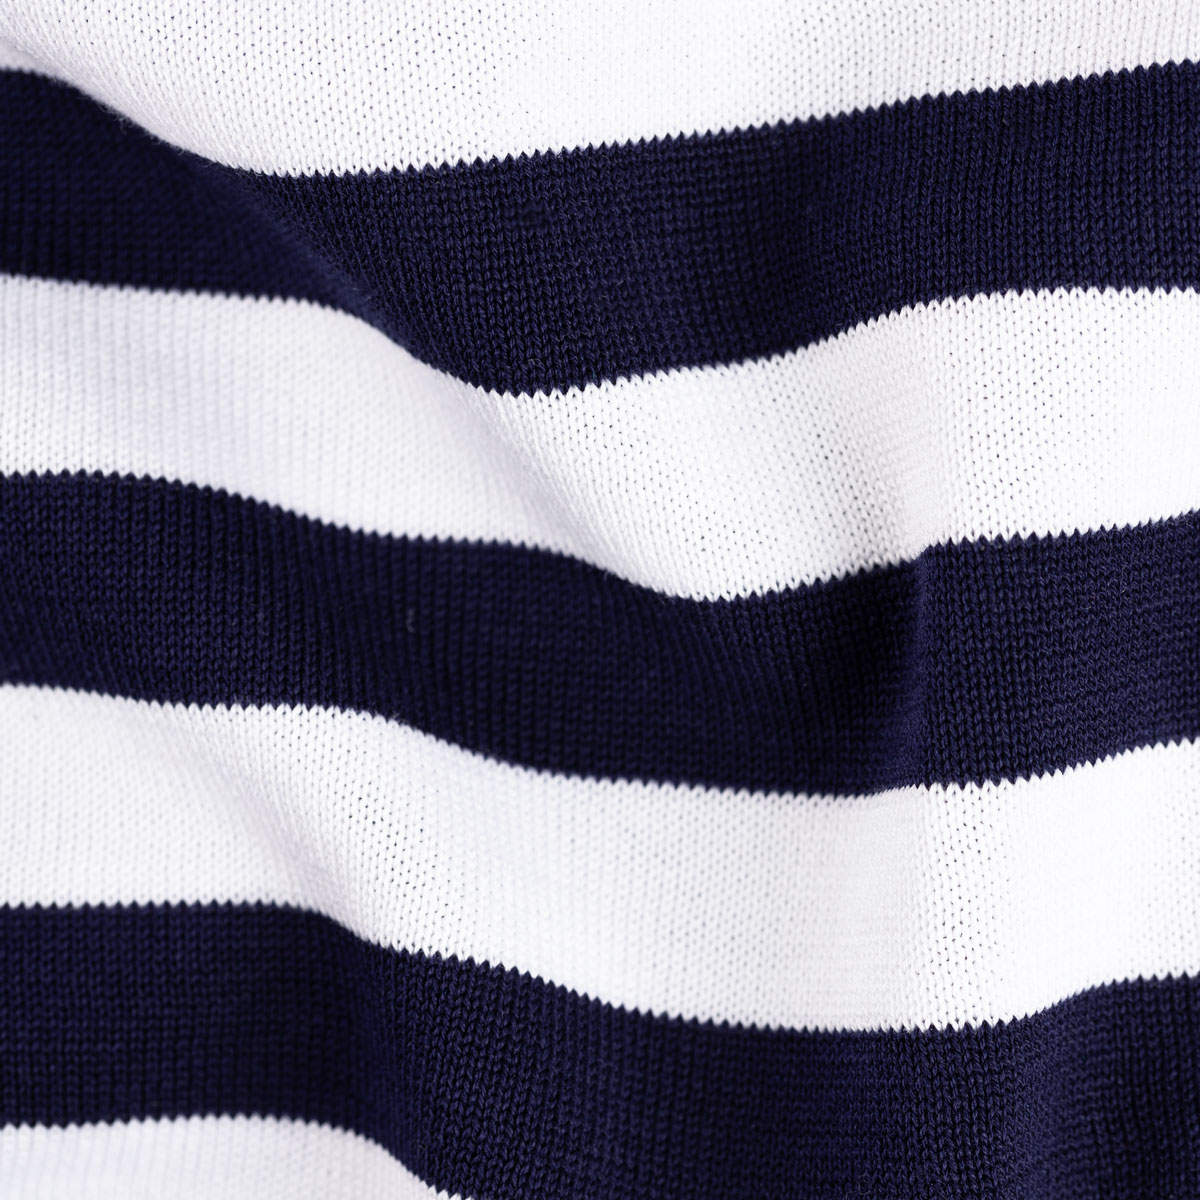 T-Shirt Rundhals mit Streifen in dunkelblau-weiß